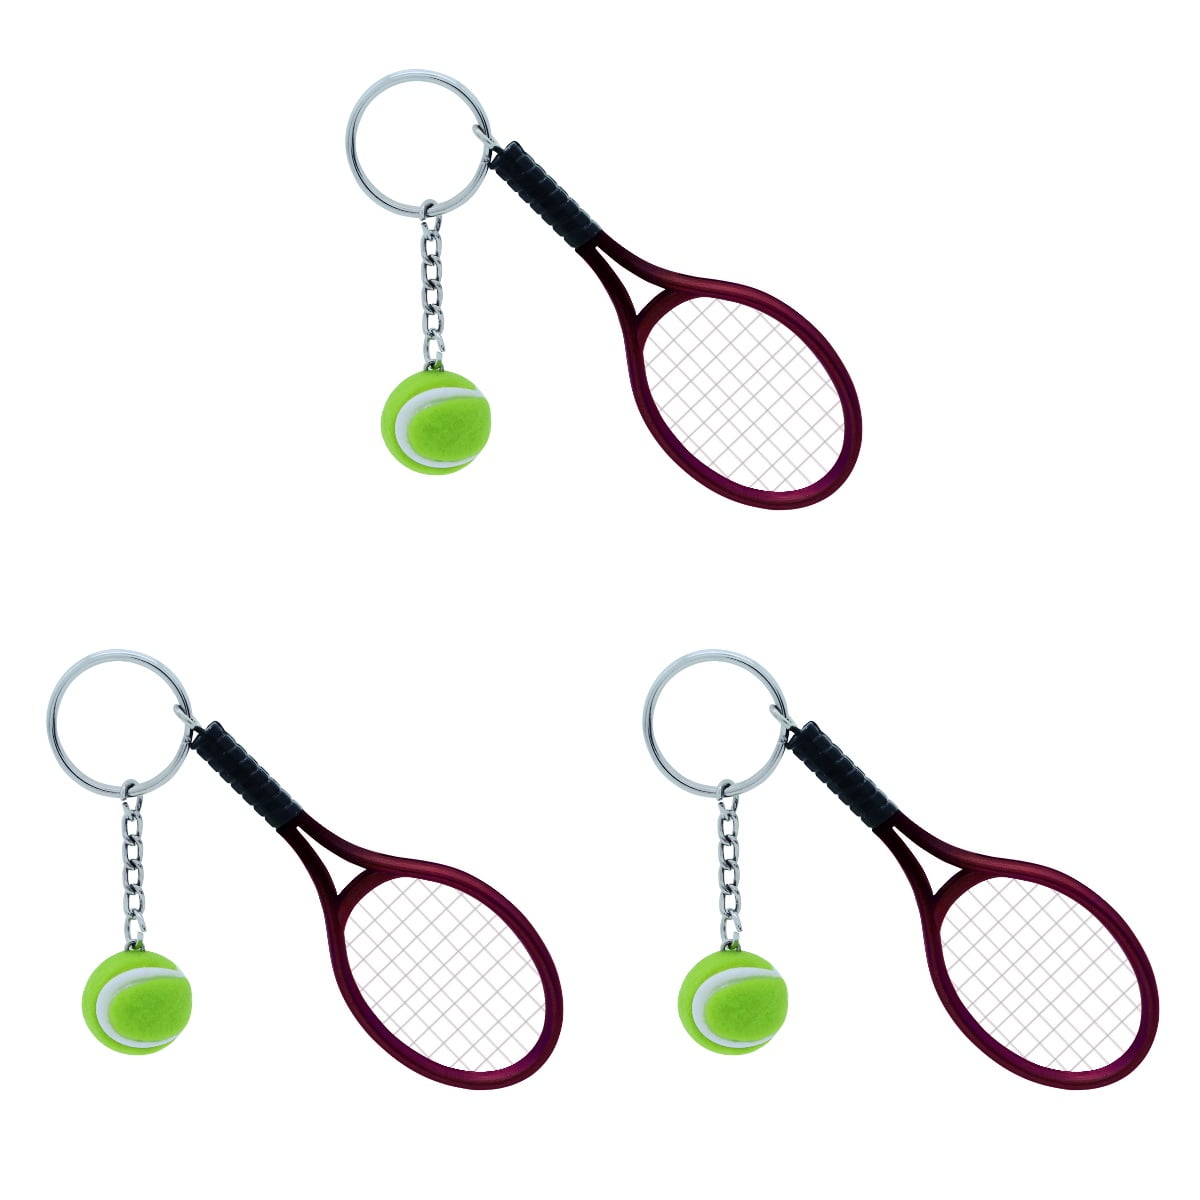 new SPORTS TENNIS Racquet Souvenirs cell phone strap key chain bag charm Ca un37 